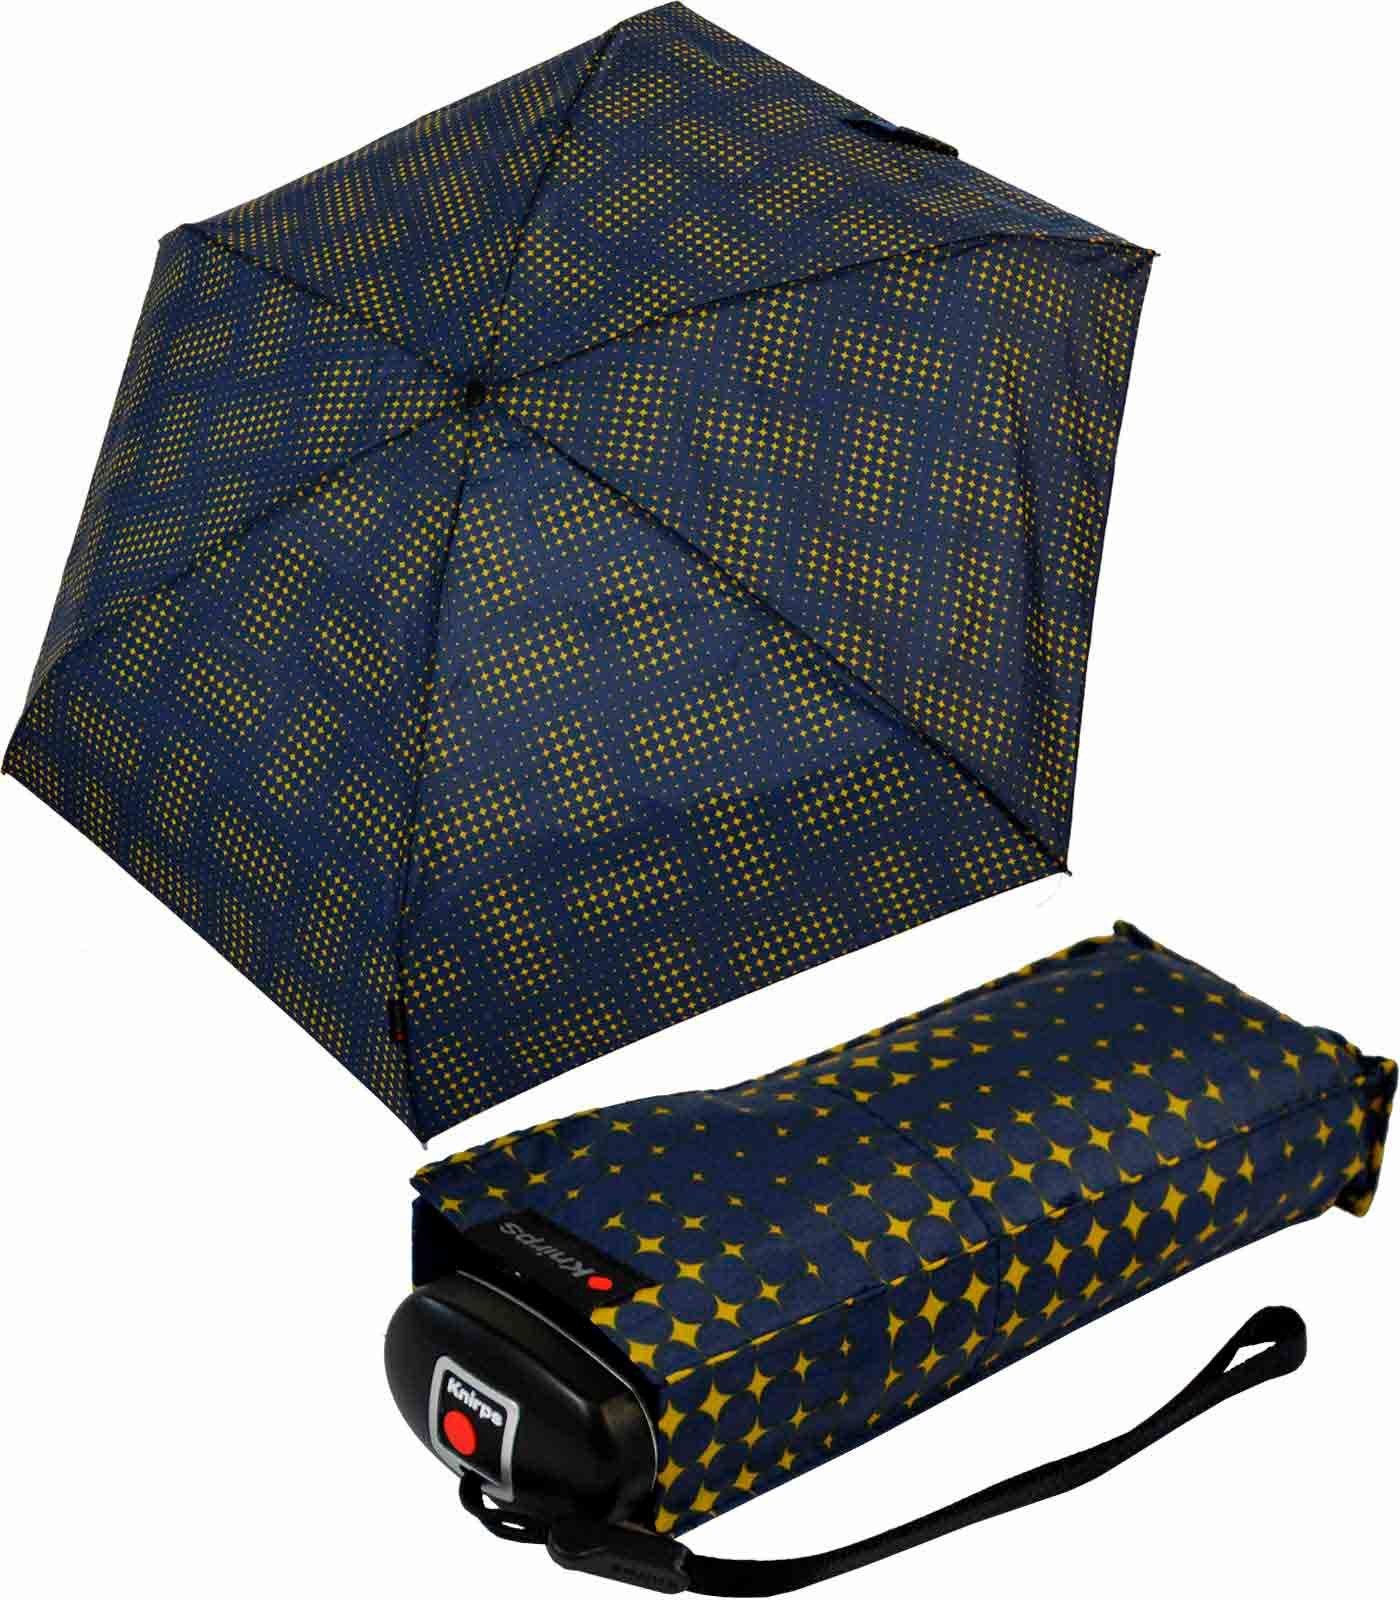 Knirps® Taschenregenschirm Mini-Schirm Travel klein leicht kompakt - stars, der zuverlässige Begleiter, der in jede Tasche passt navy-blau-gelb